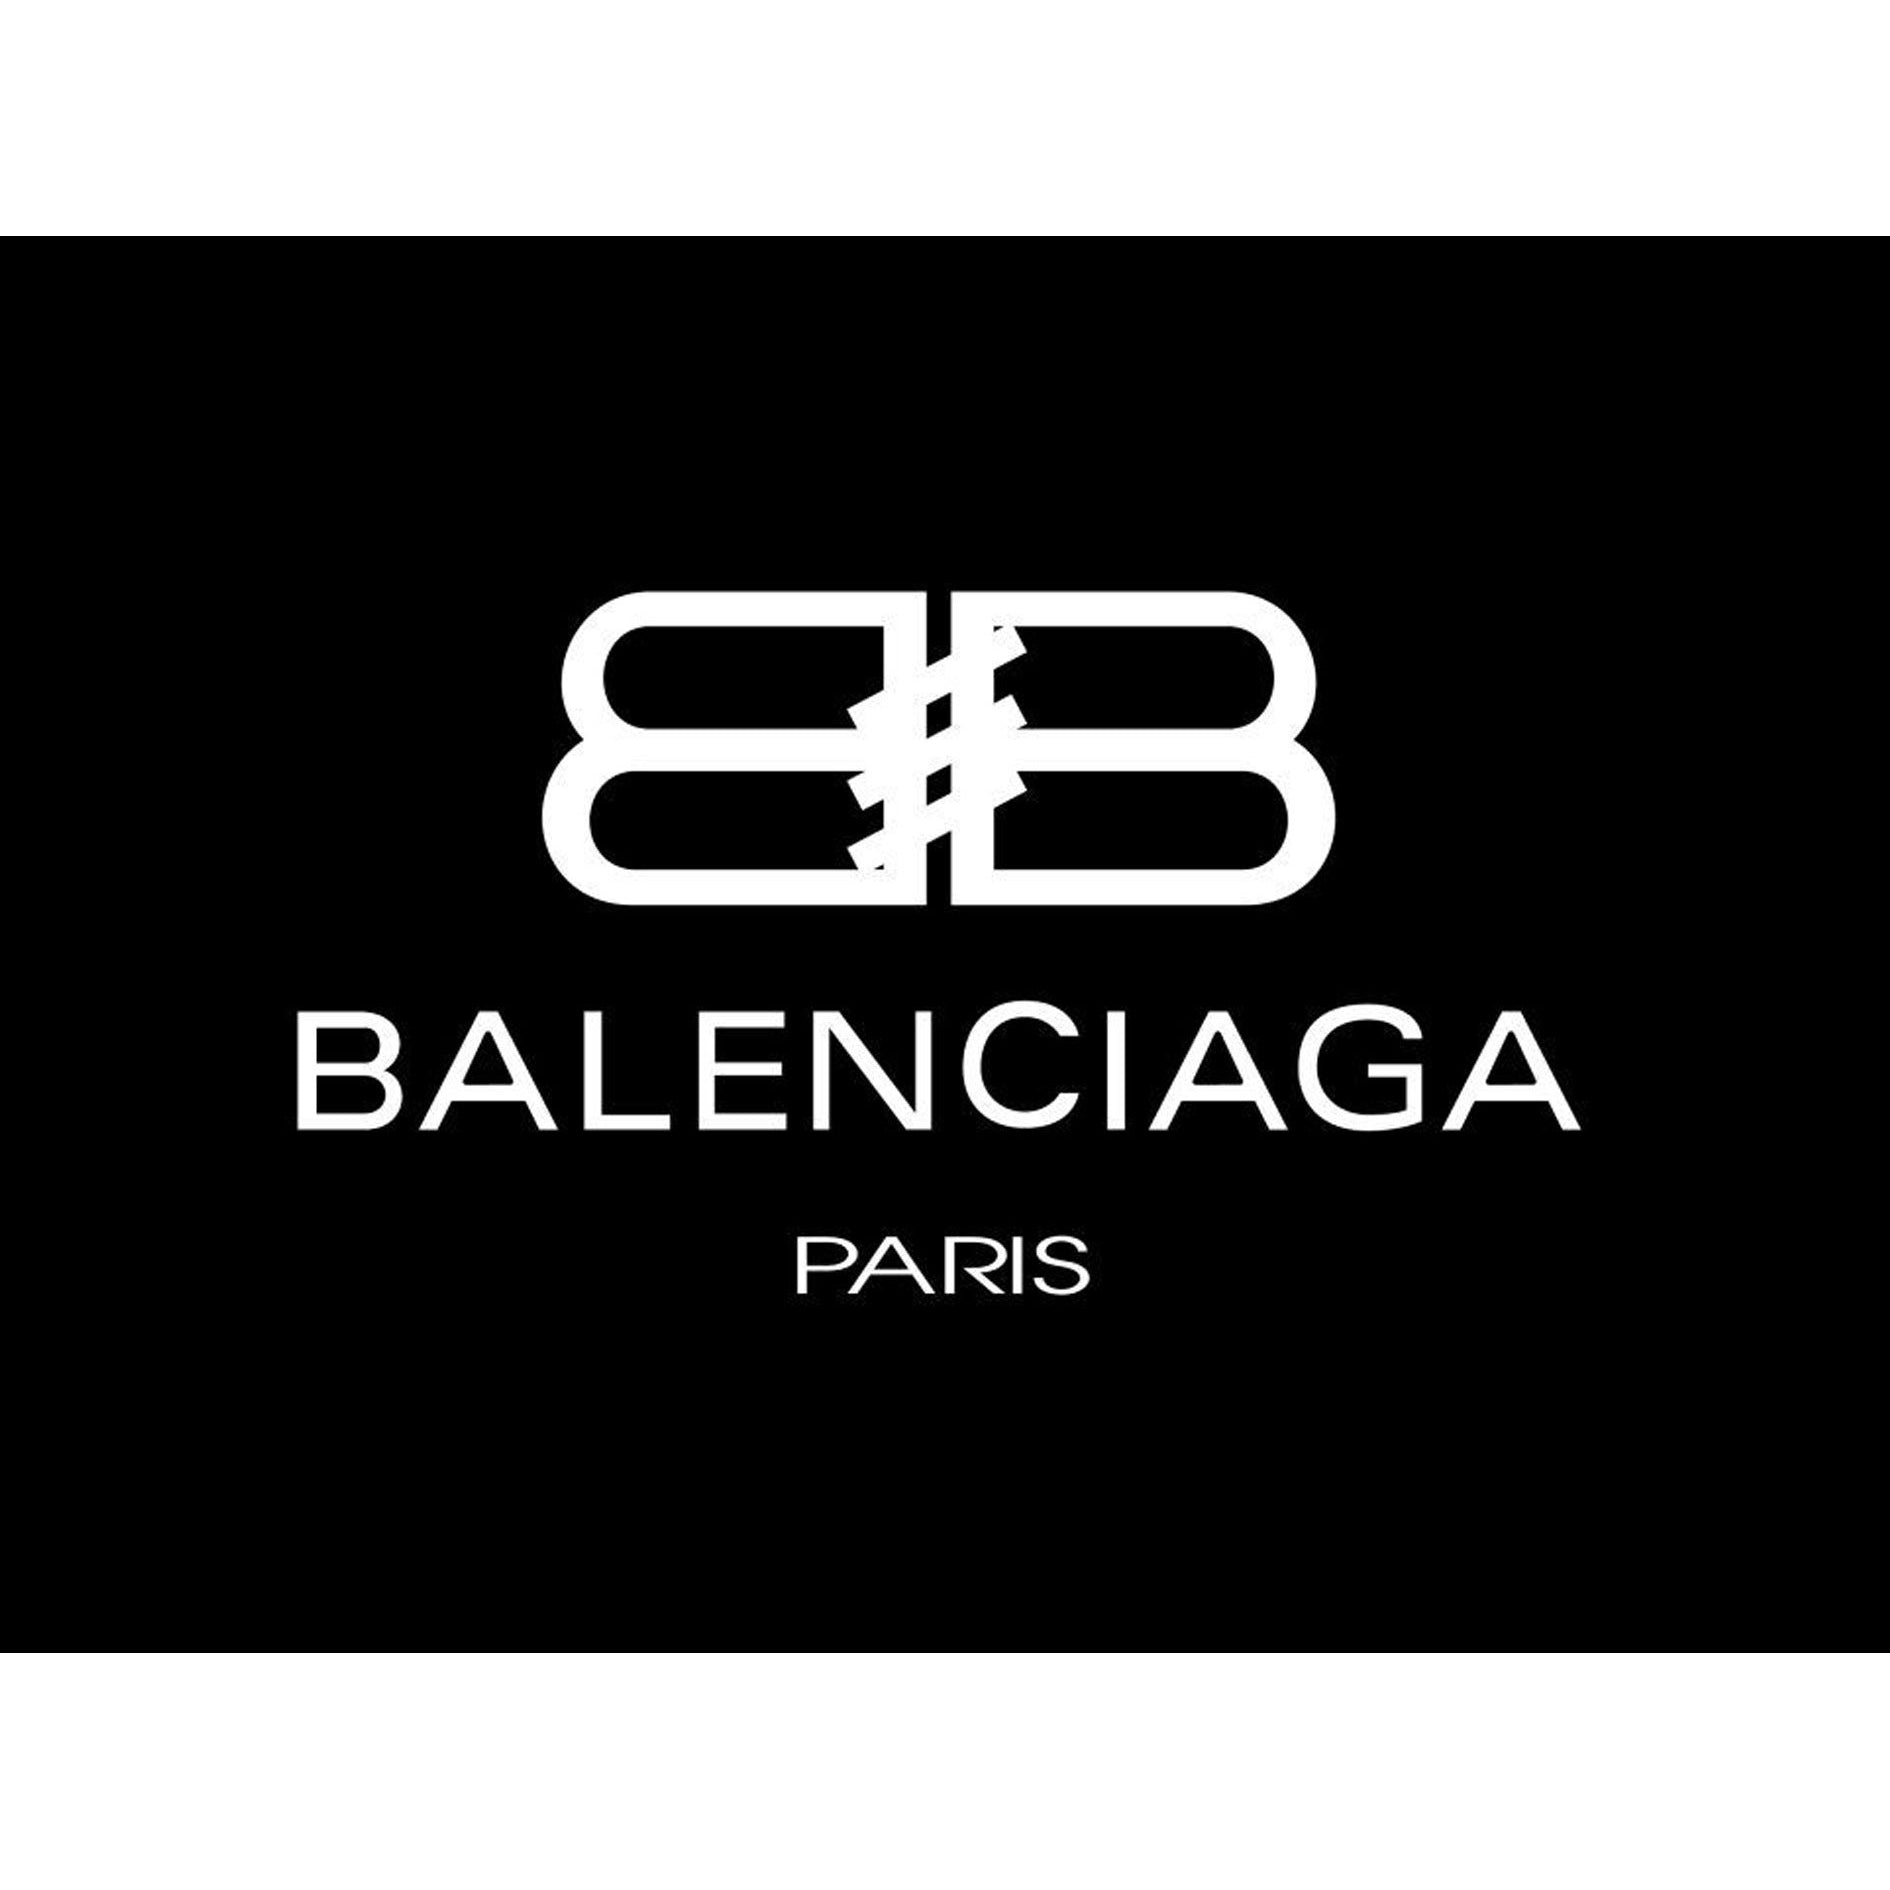 Balenciaga Leaf And Crown SVG Download Balenciaga Paris Logo Vector File  Balenciaga Brand Logo png file Balenciaga Leaf And C  Art logo Art  alevel Paris logo